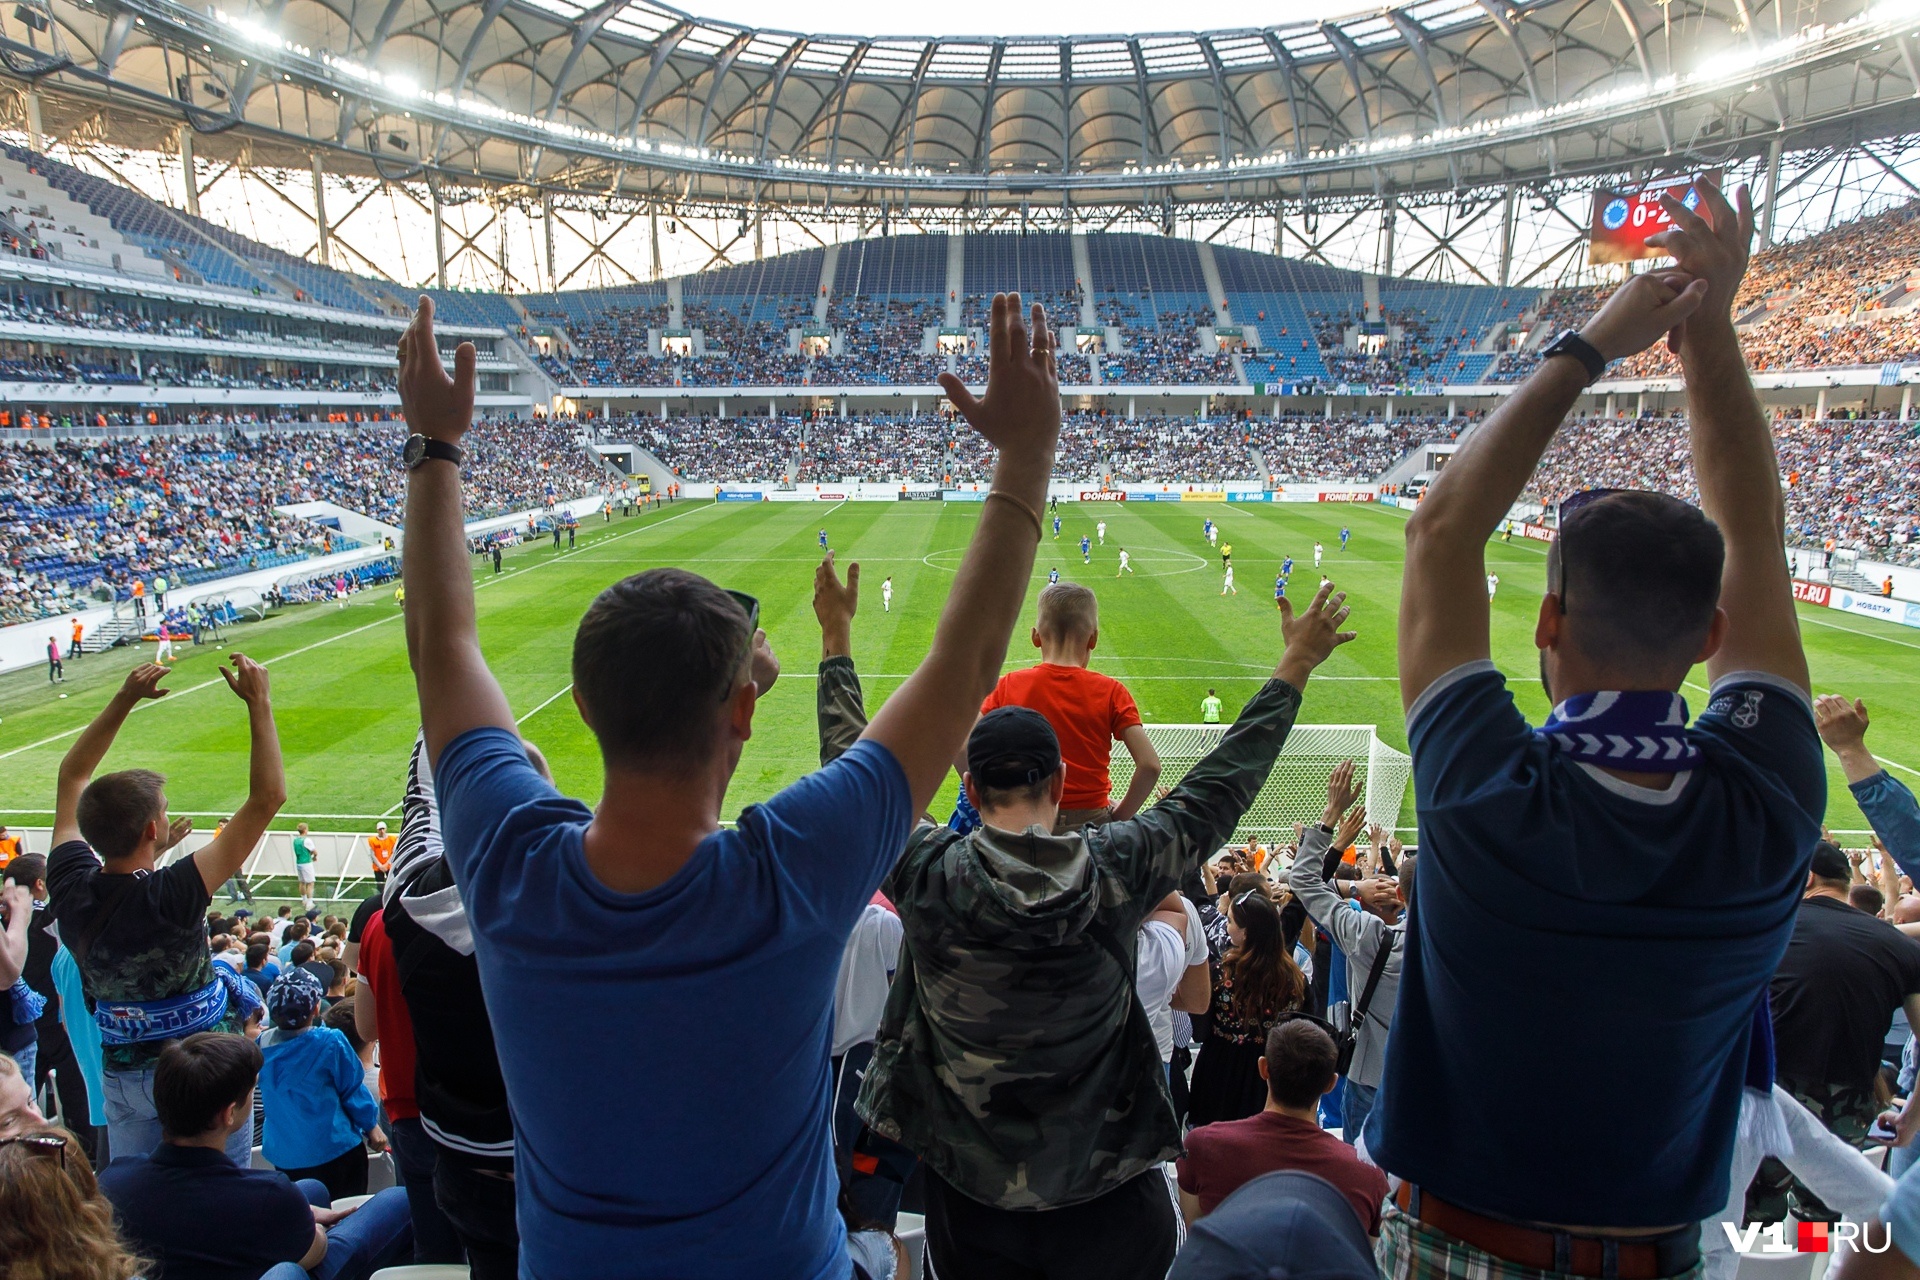 Не больше четырех штук в одни руки: волгоградский «Ротор» объявил цены на матчи Премьер-лиги